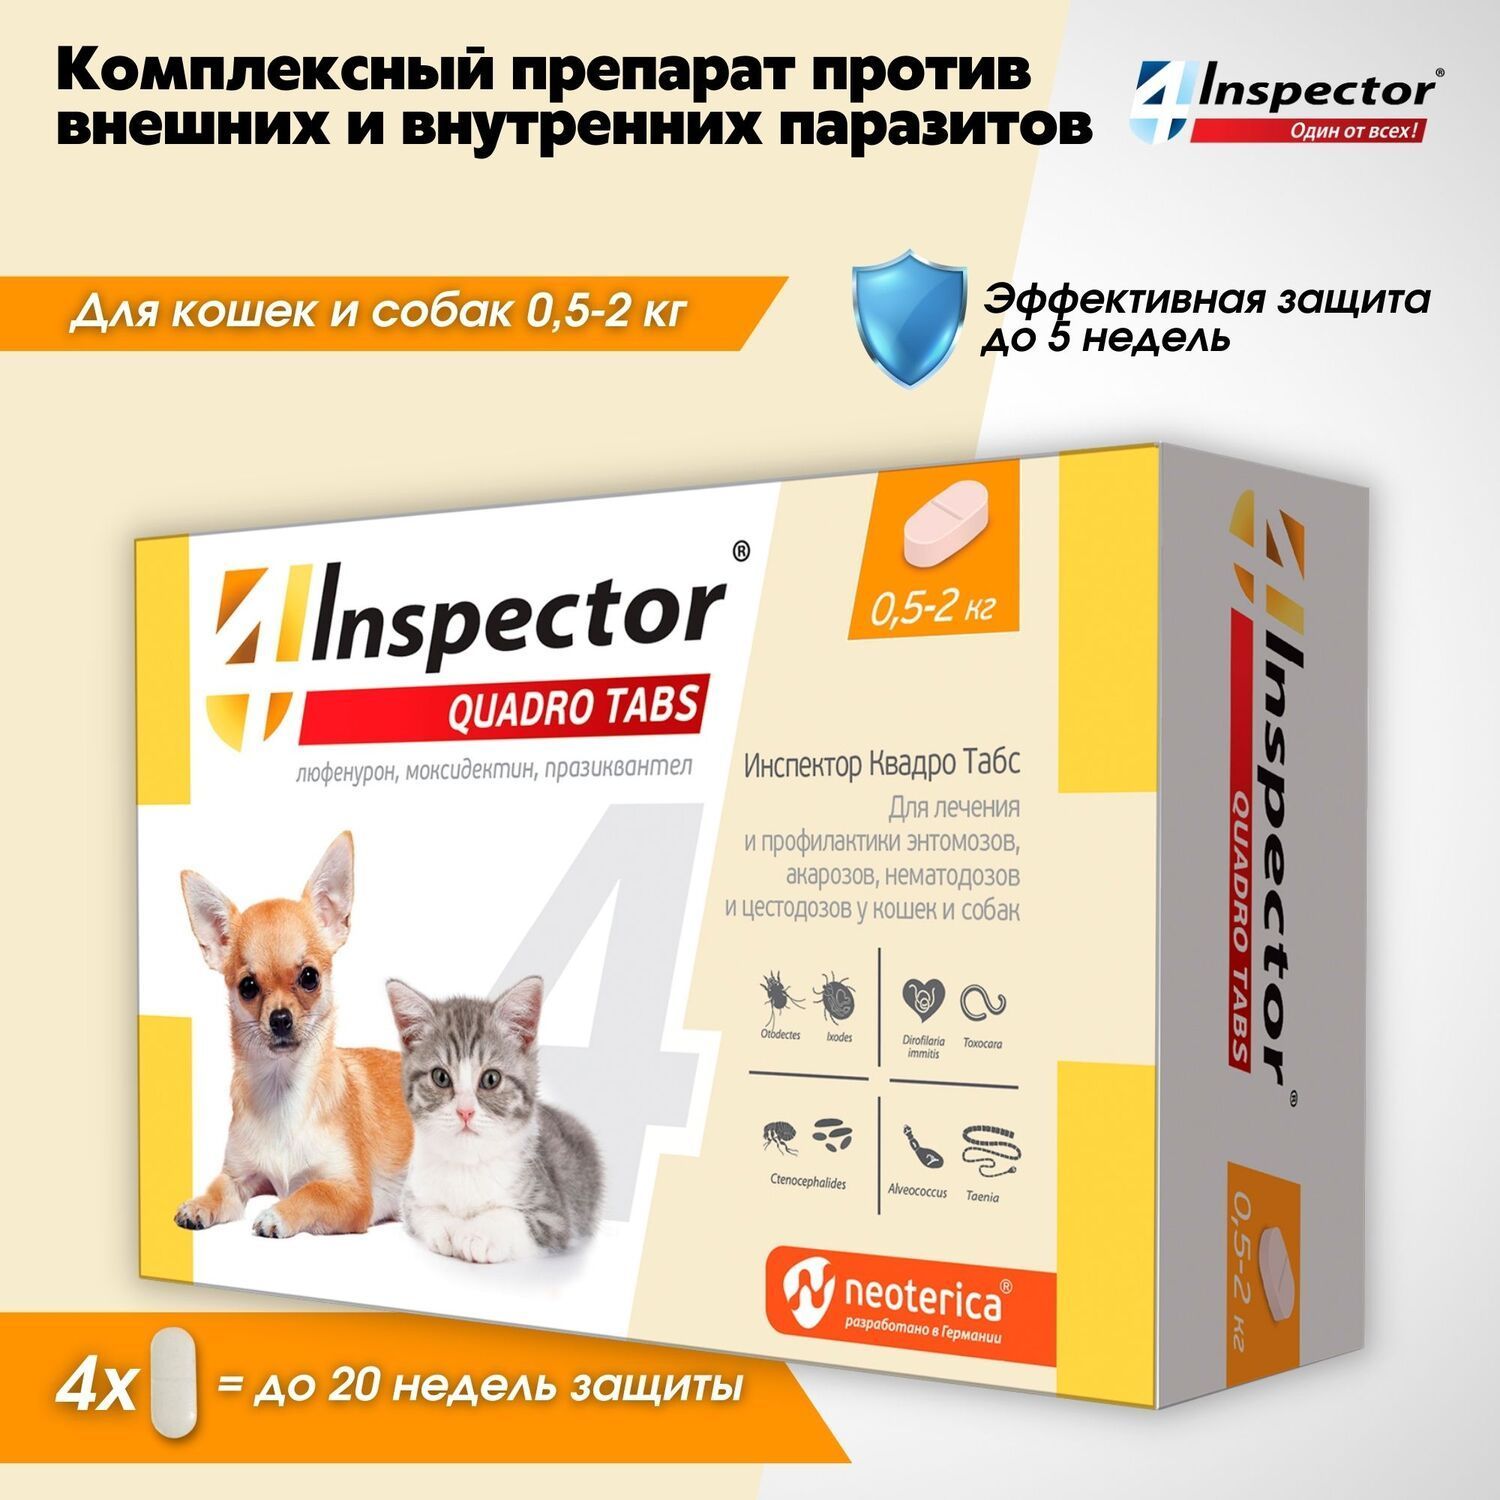 Inspector quadro tabs цены. Инспектор табс для собак. Инспектор Квадро табс для собак. Inspector Quadro Tabs для собак. Инспектор Квадро табс для кошек.